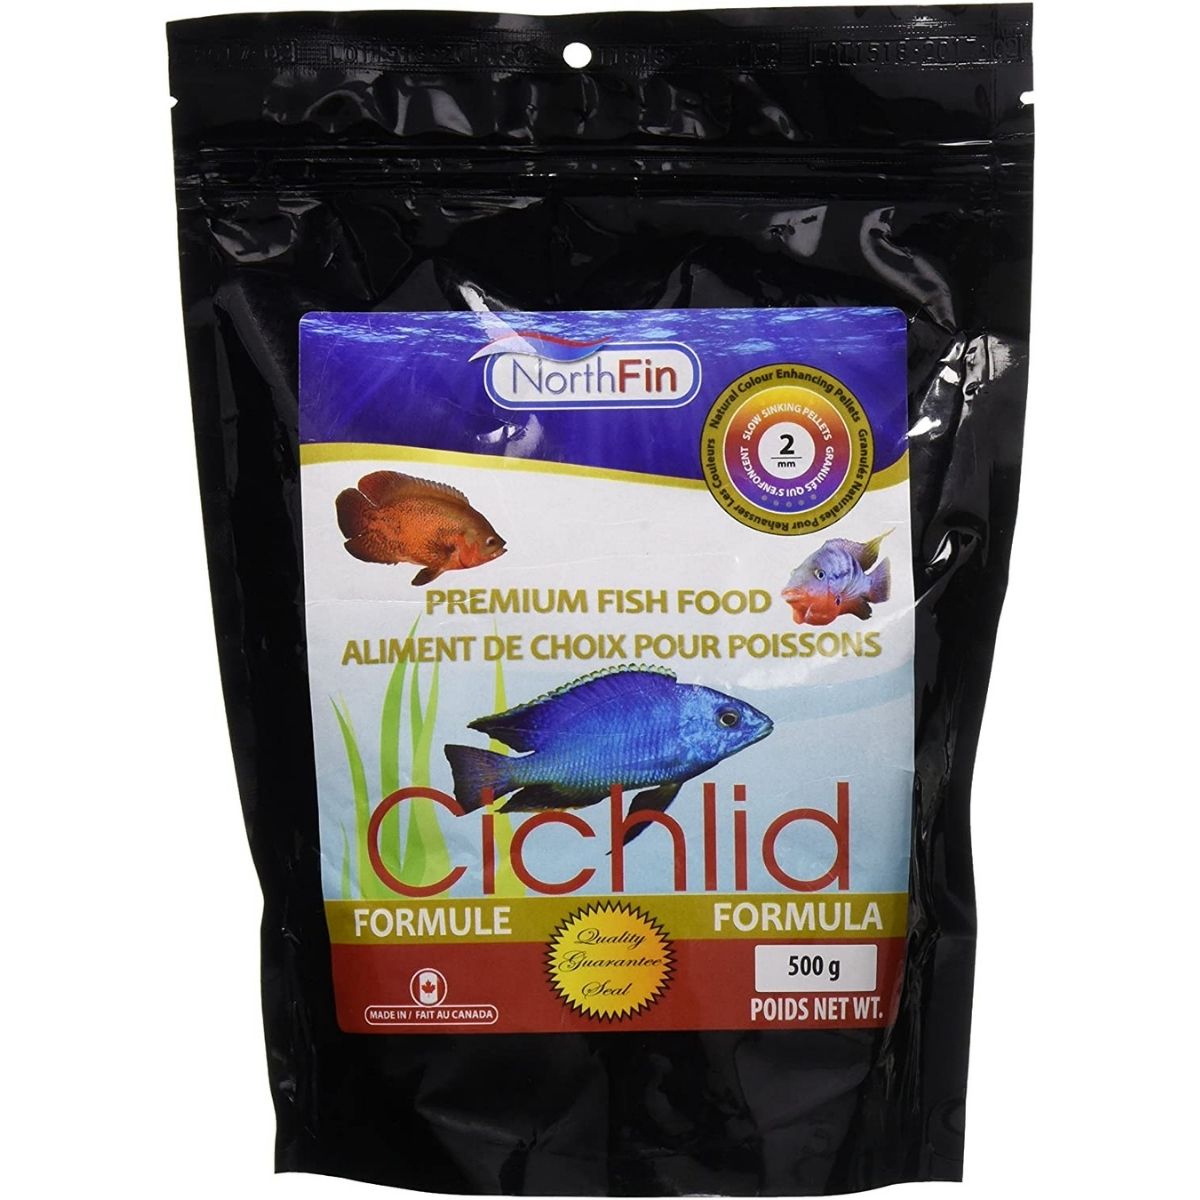 The Best Cichlid Food Option: Northfin Food Cichlid